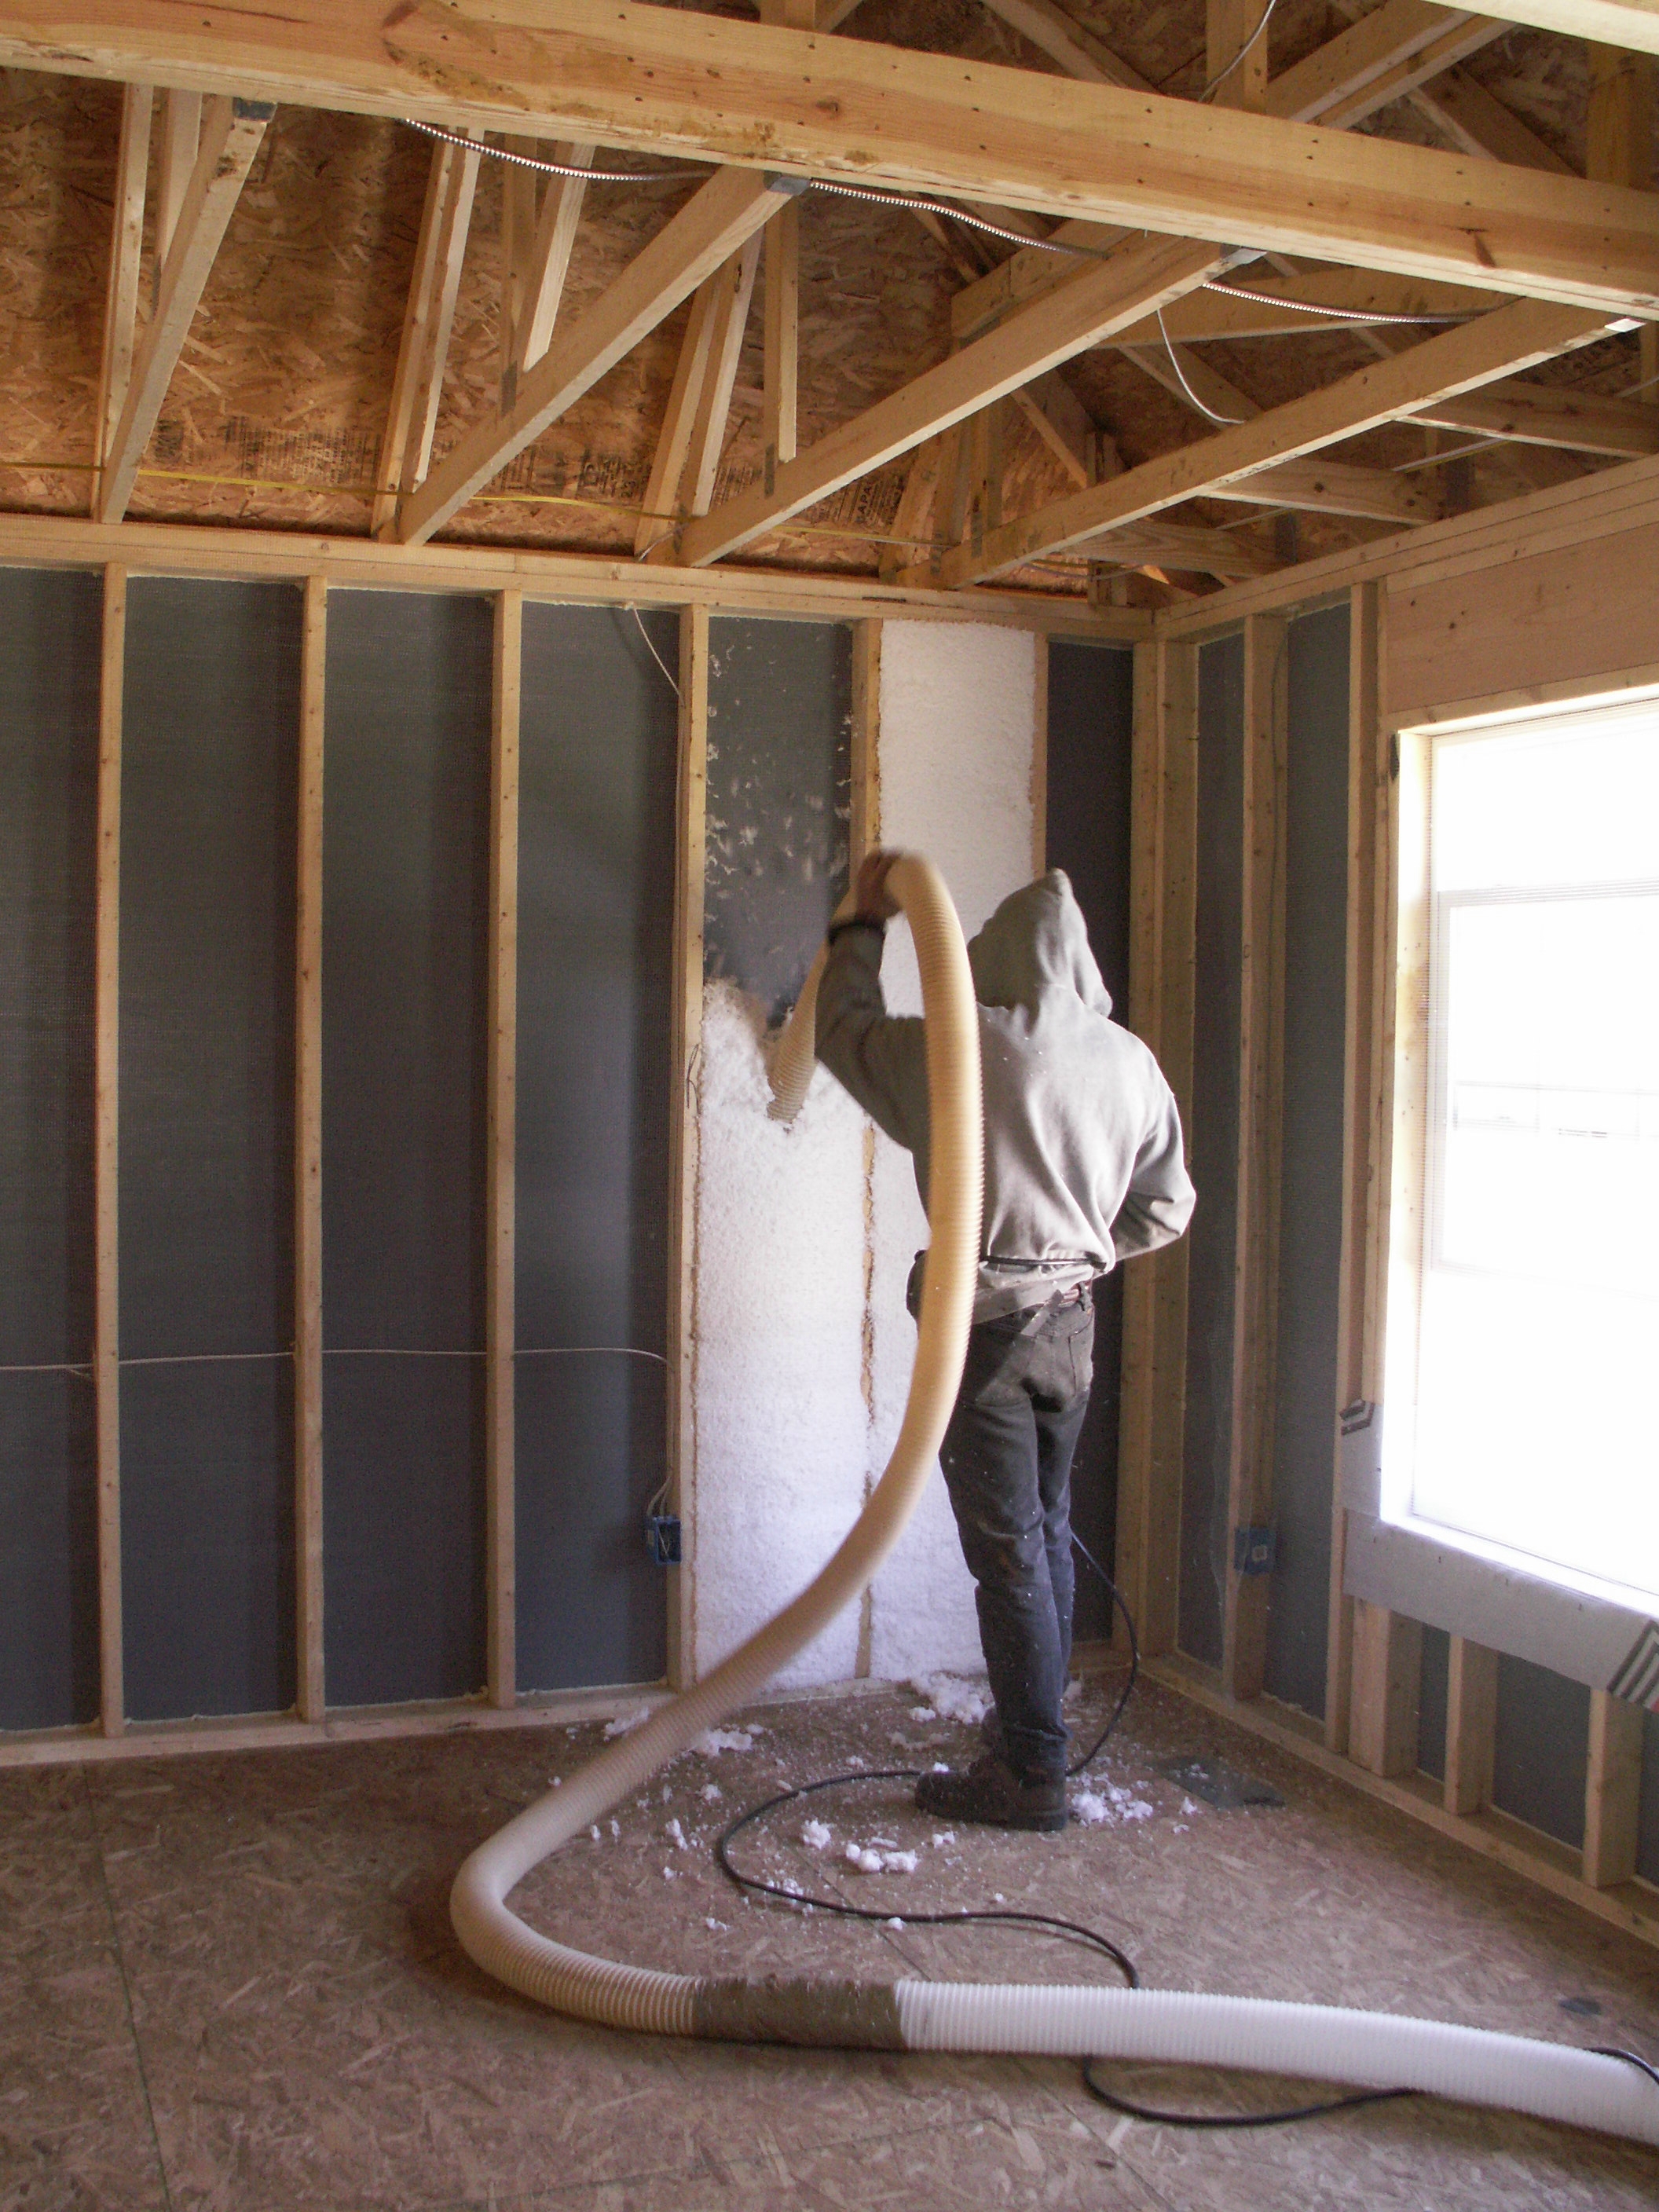 Blown fiberglass insulation fills netted wall cavities